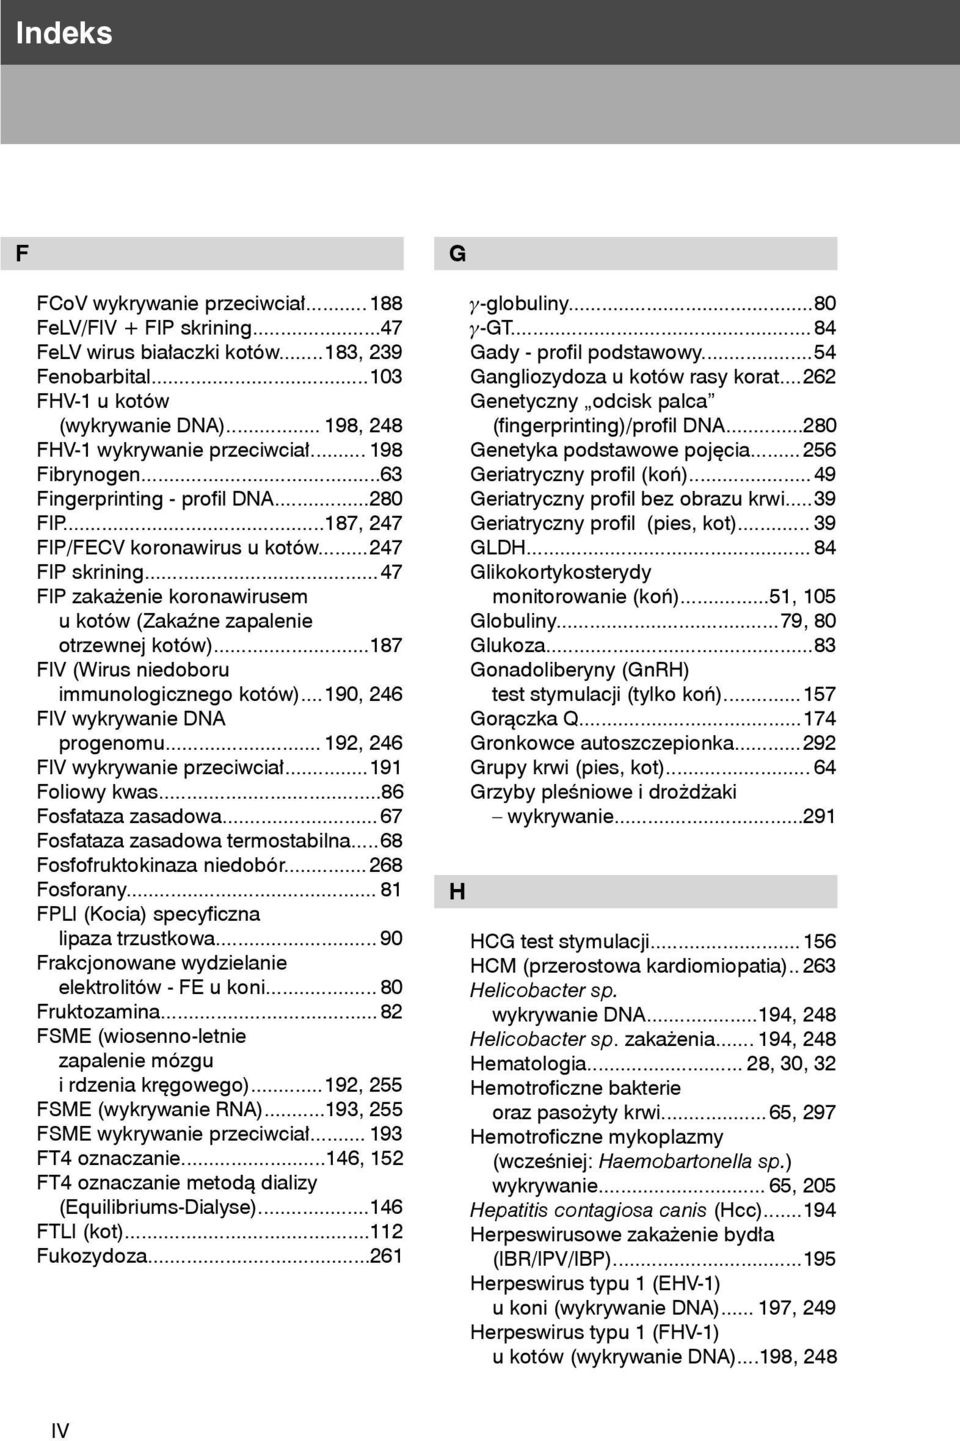 .. 47 FIP zakażenie koronawirusem u kotów (Zakaźne zapalenie otrzewnej kotów)... 187 FIV (Wirus niedoboru immunologicznego kotów)... 190, 246 FIV wykrywanie DNA progenomu.